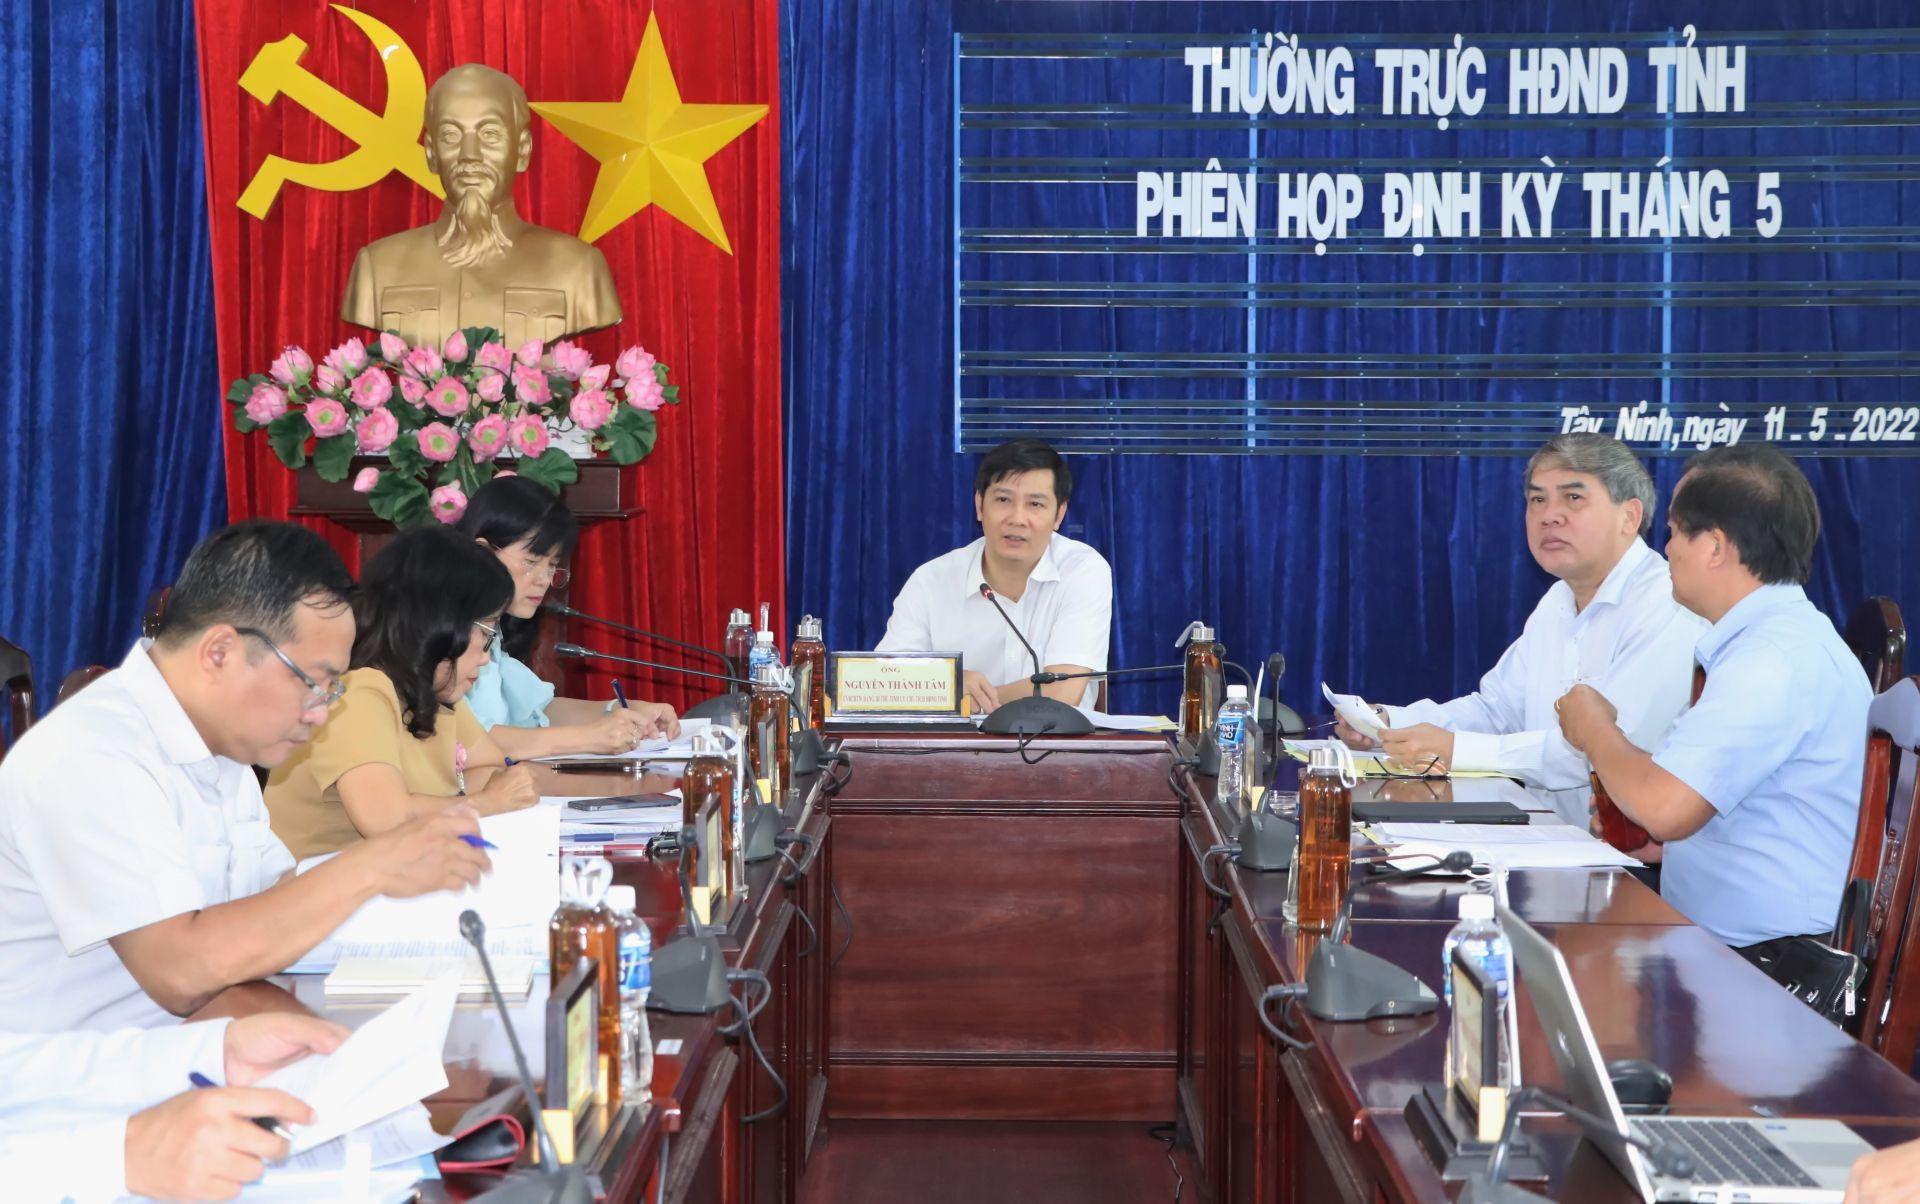 Điểm báo in Tây Ninh ngày 13.05.2022